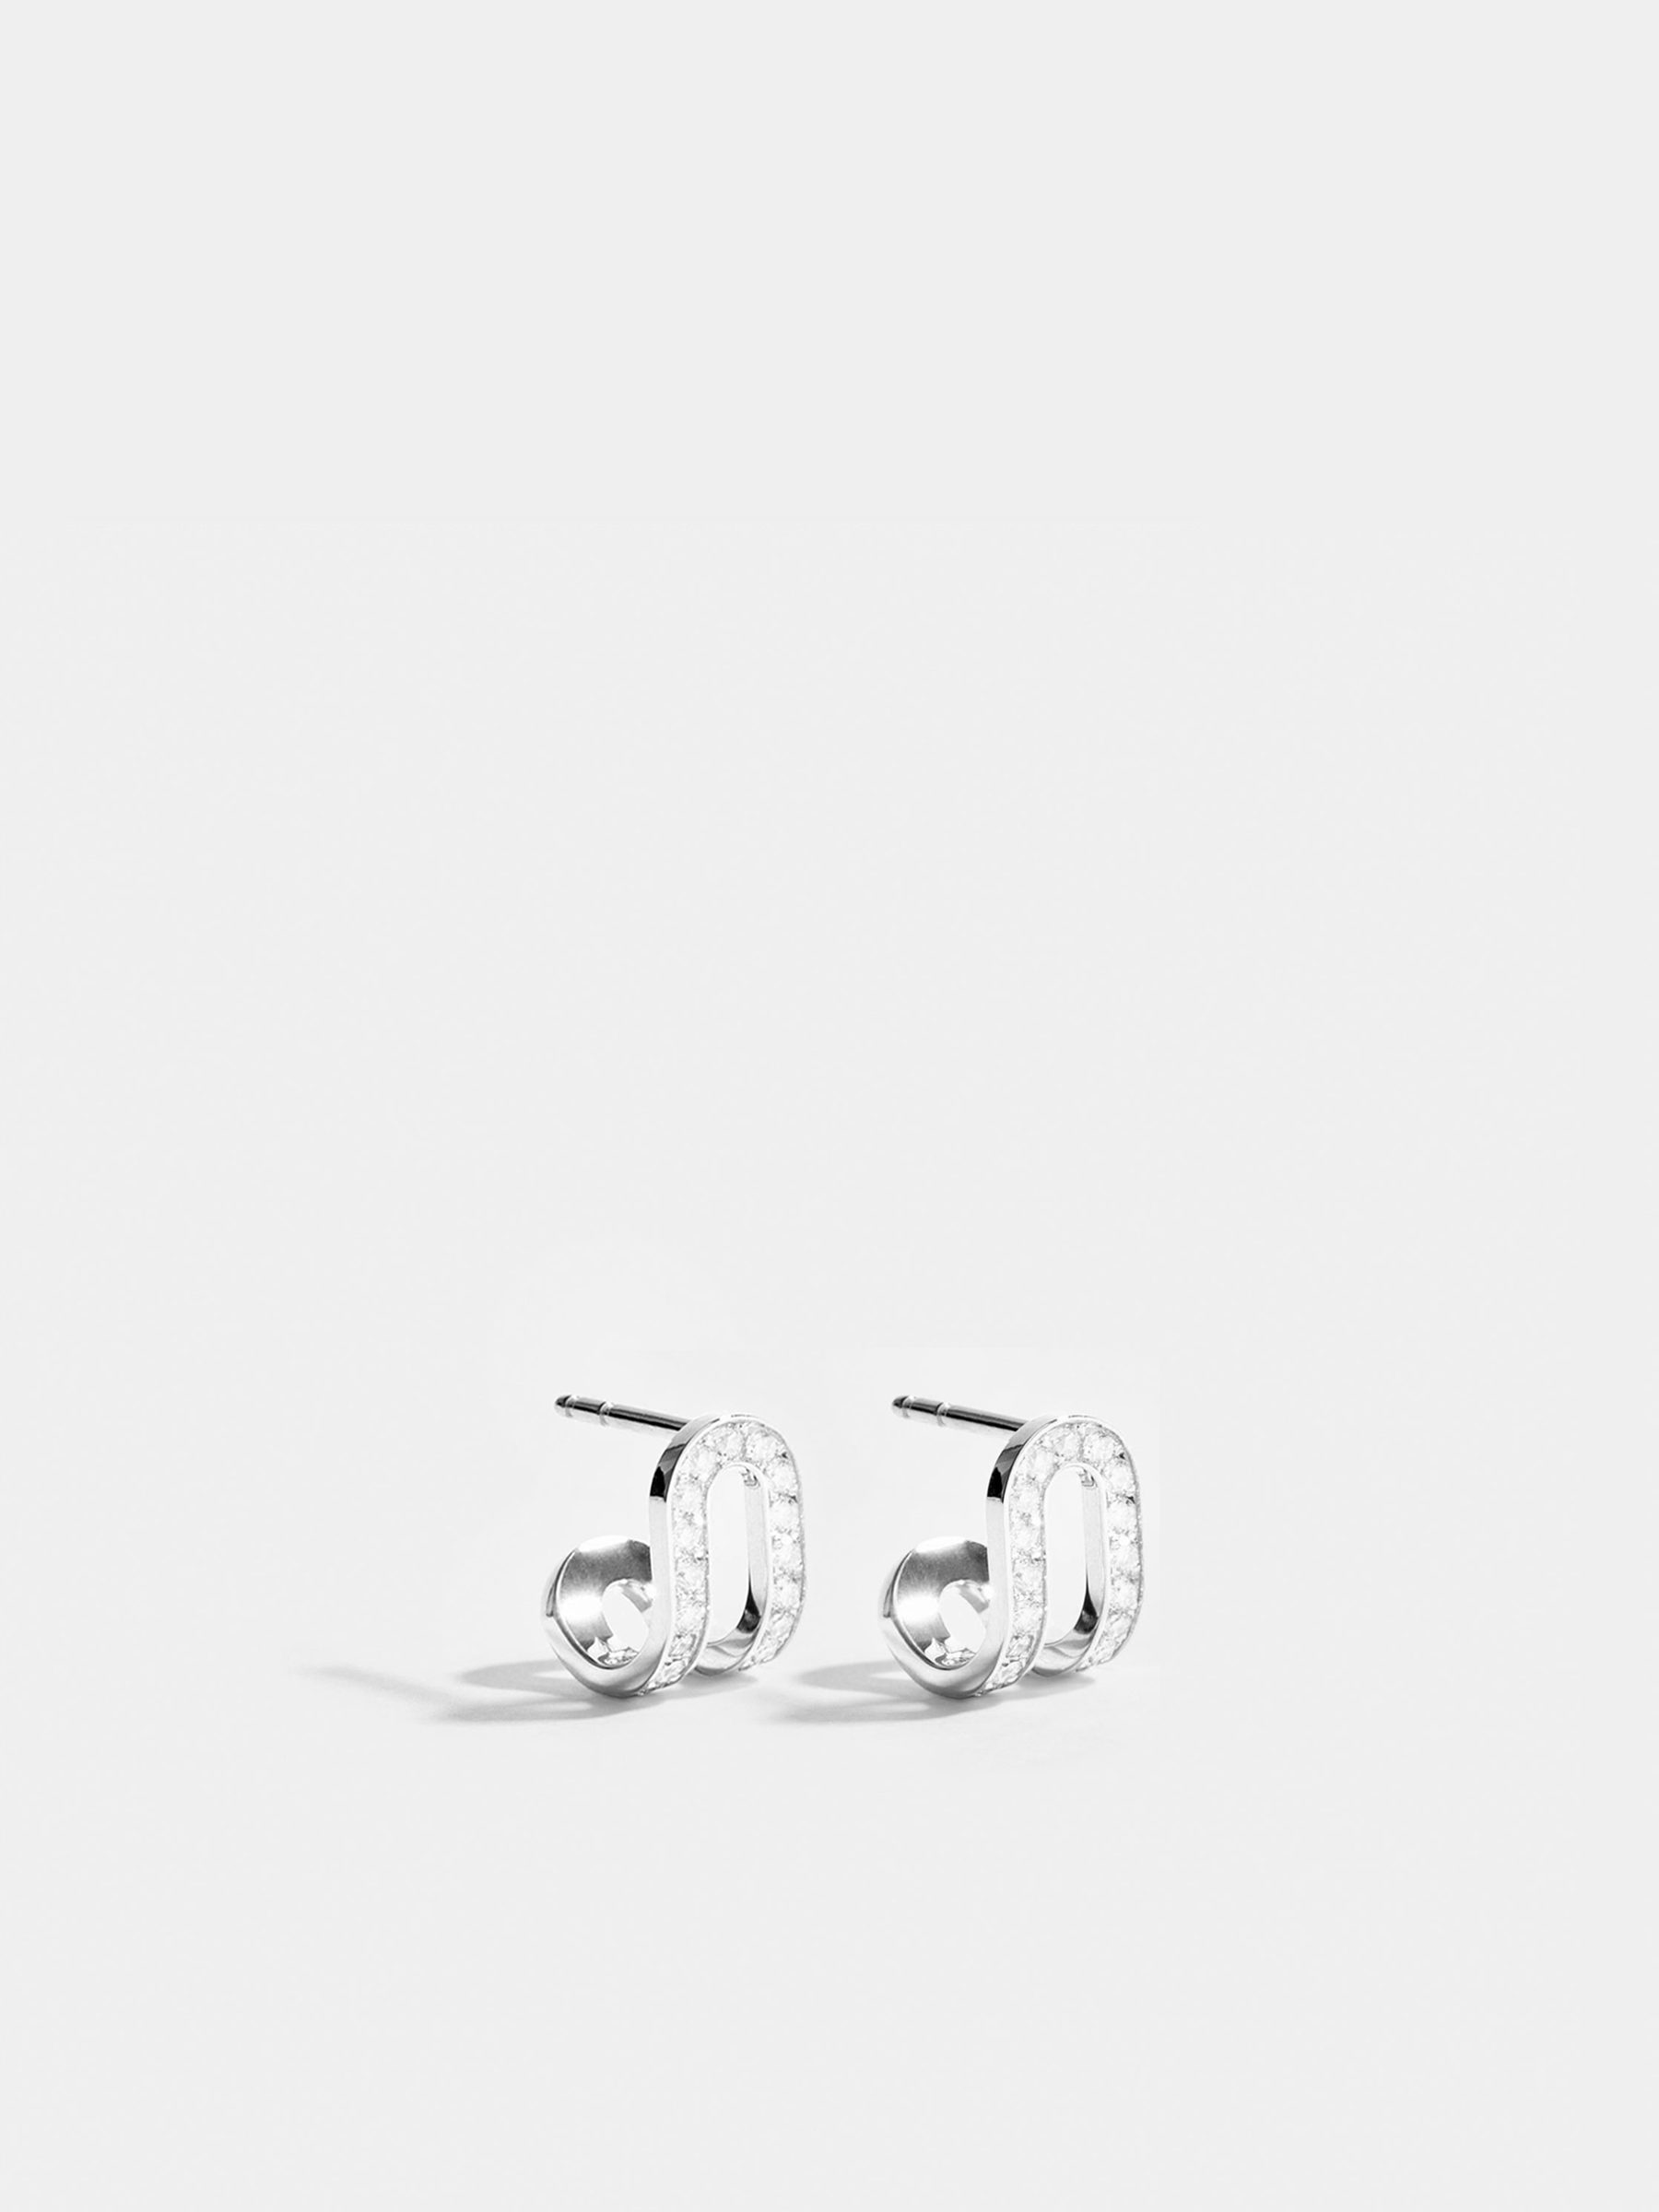 Boucles d'oreilles Étreintes en Or blanc éthique 18 carats certifié Fairmined et pavée de diamants de synthèse, la paire.